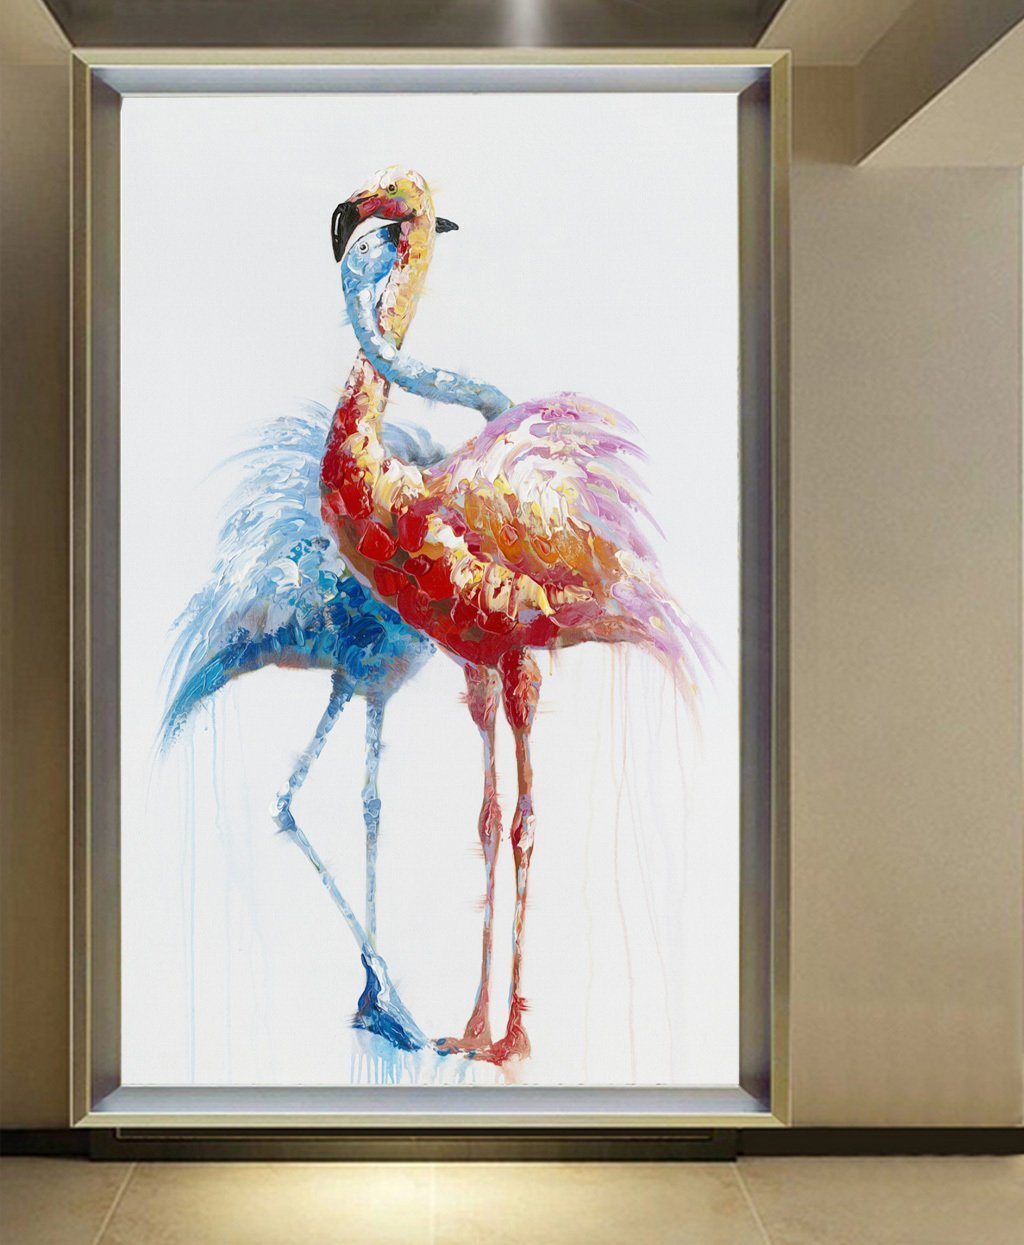 3D Colored Flamingo 647 Wall Murals Wallpaper AJ Wallpaper 2 